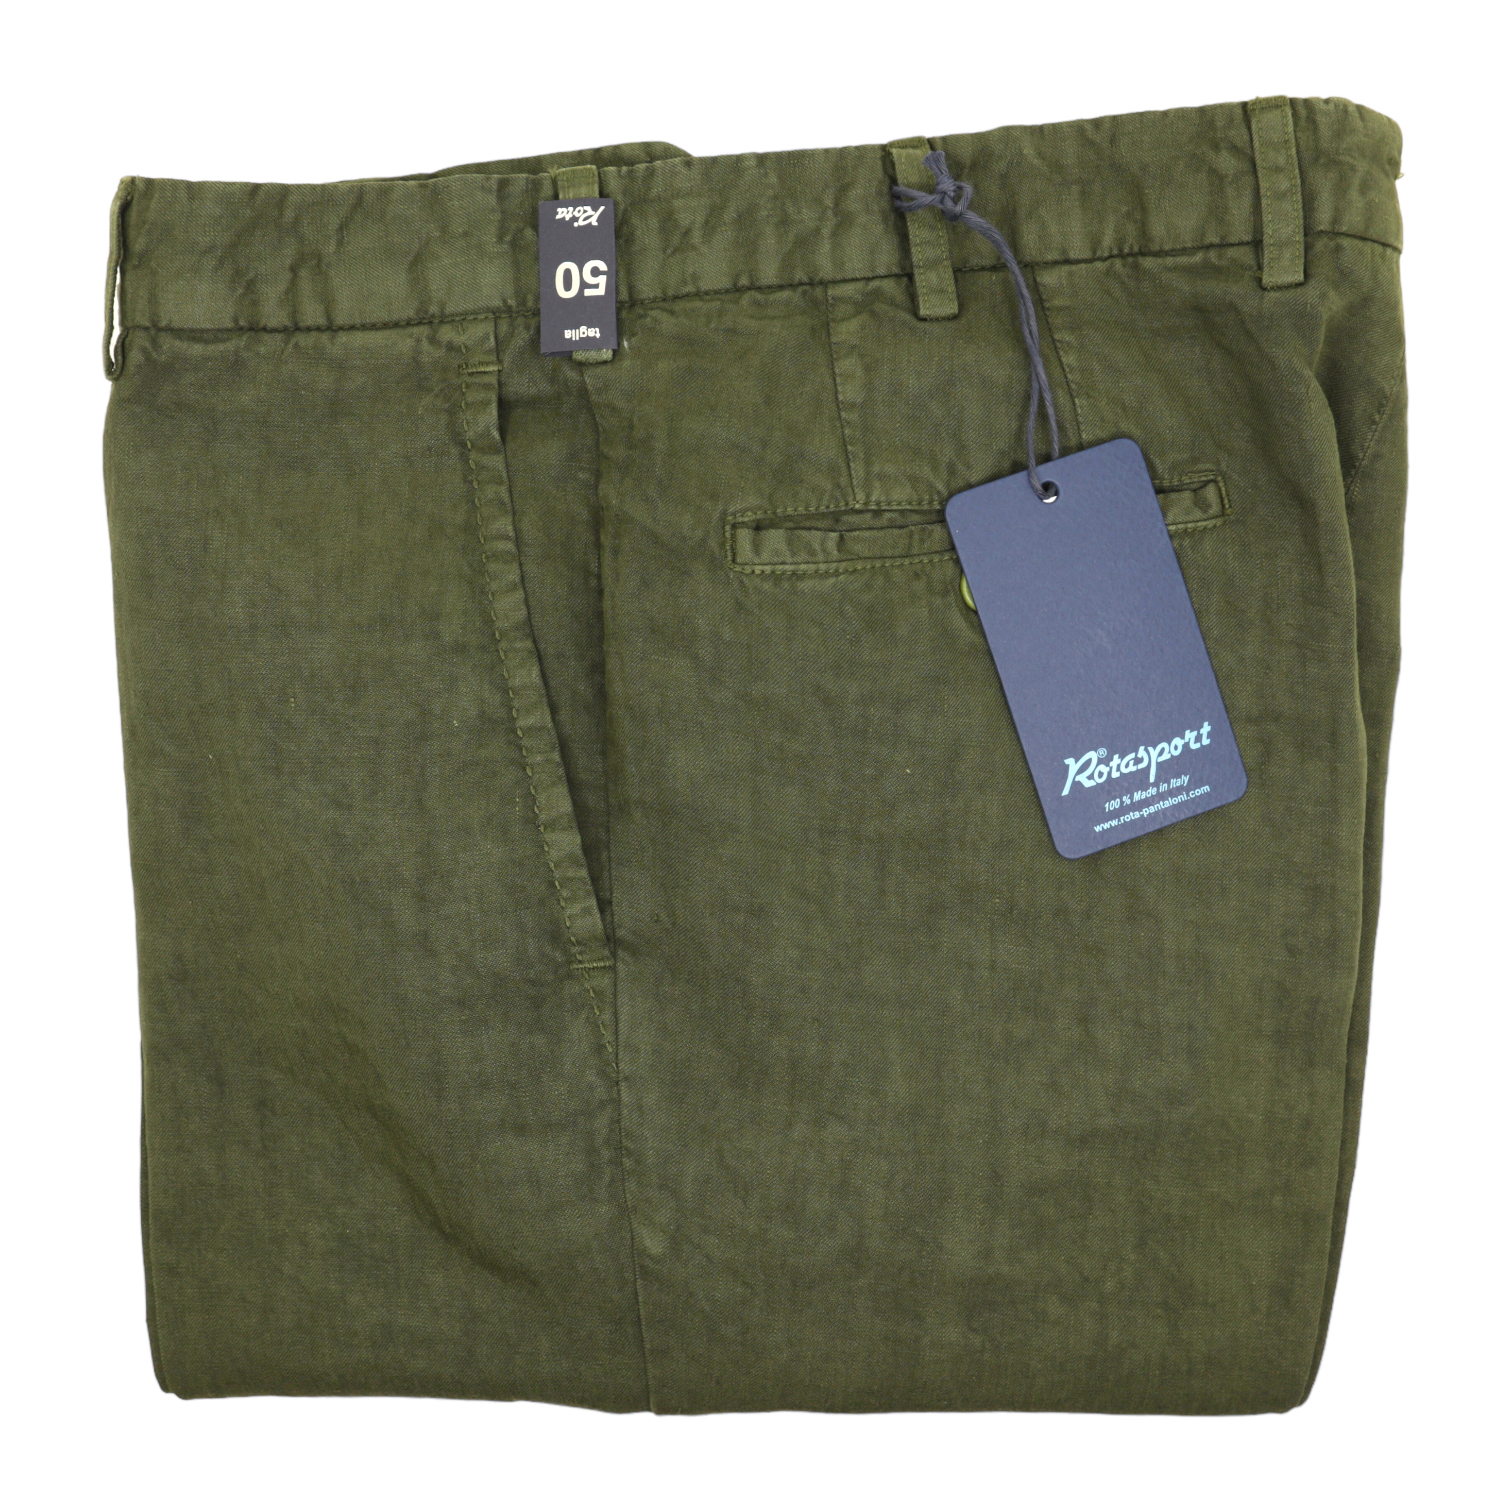 Rota delavè linen green trousers